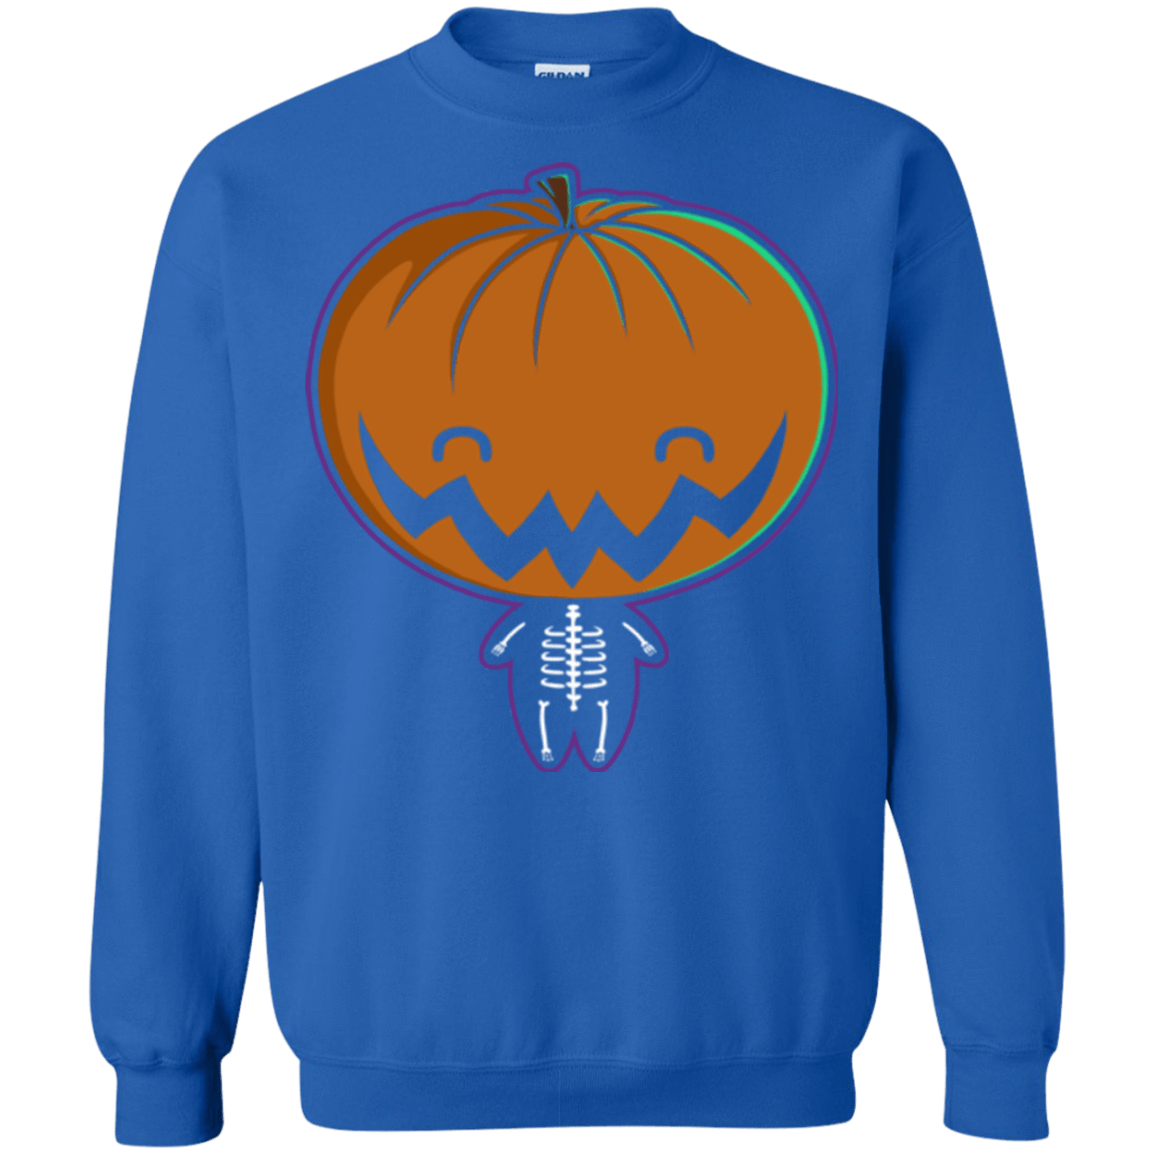 Sweatshirts Royal / Small Pumpkin Head Crewneck Sweatshirt